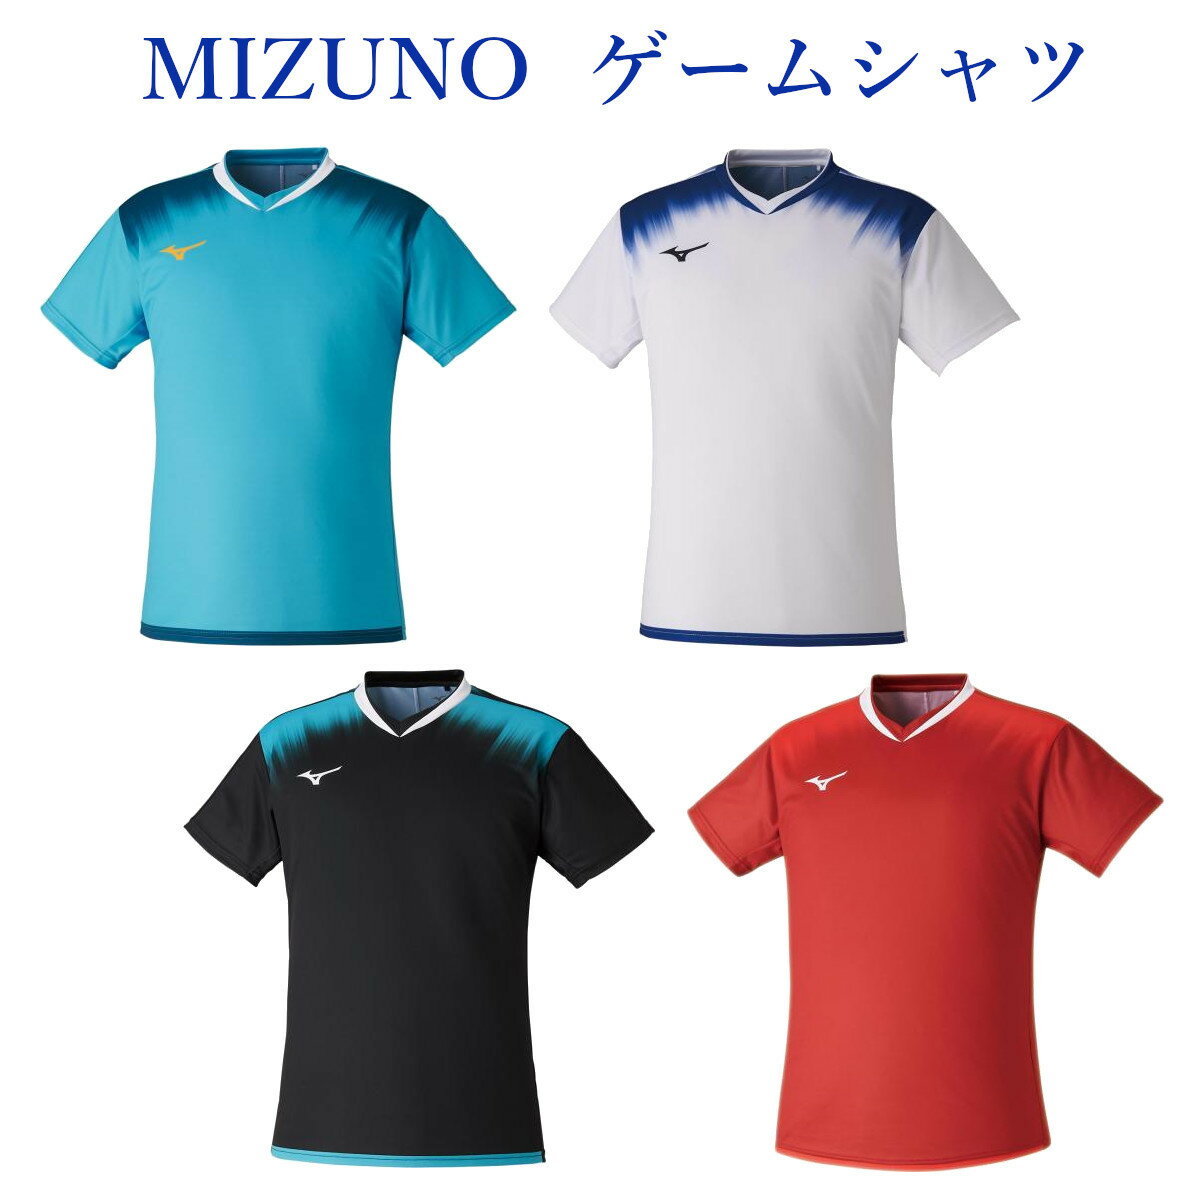 ミズノ クイックドライゲームシャツ 72MA1020 ニセックス 2021SS ゆうパケット(メール便)対応 バドミントン テニス ソフトテニス